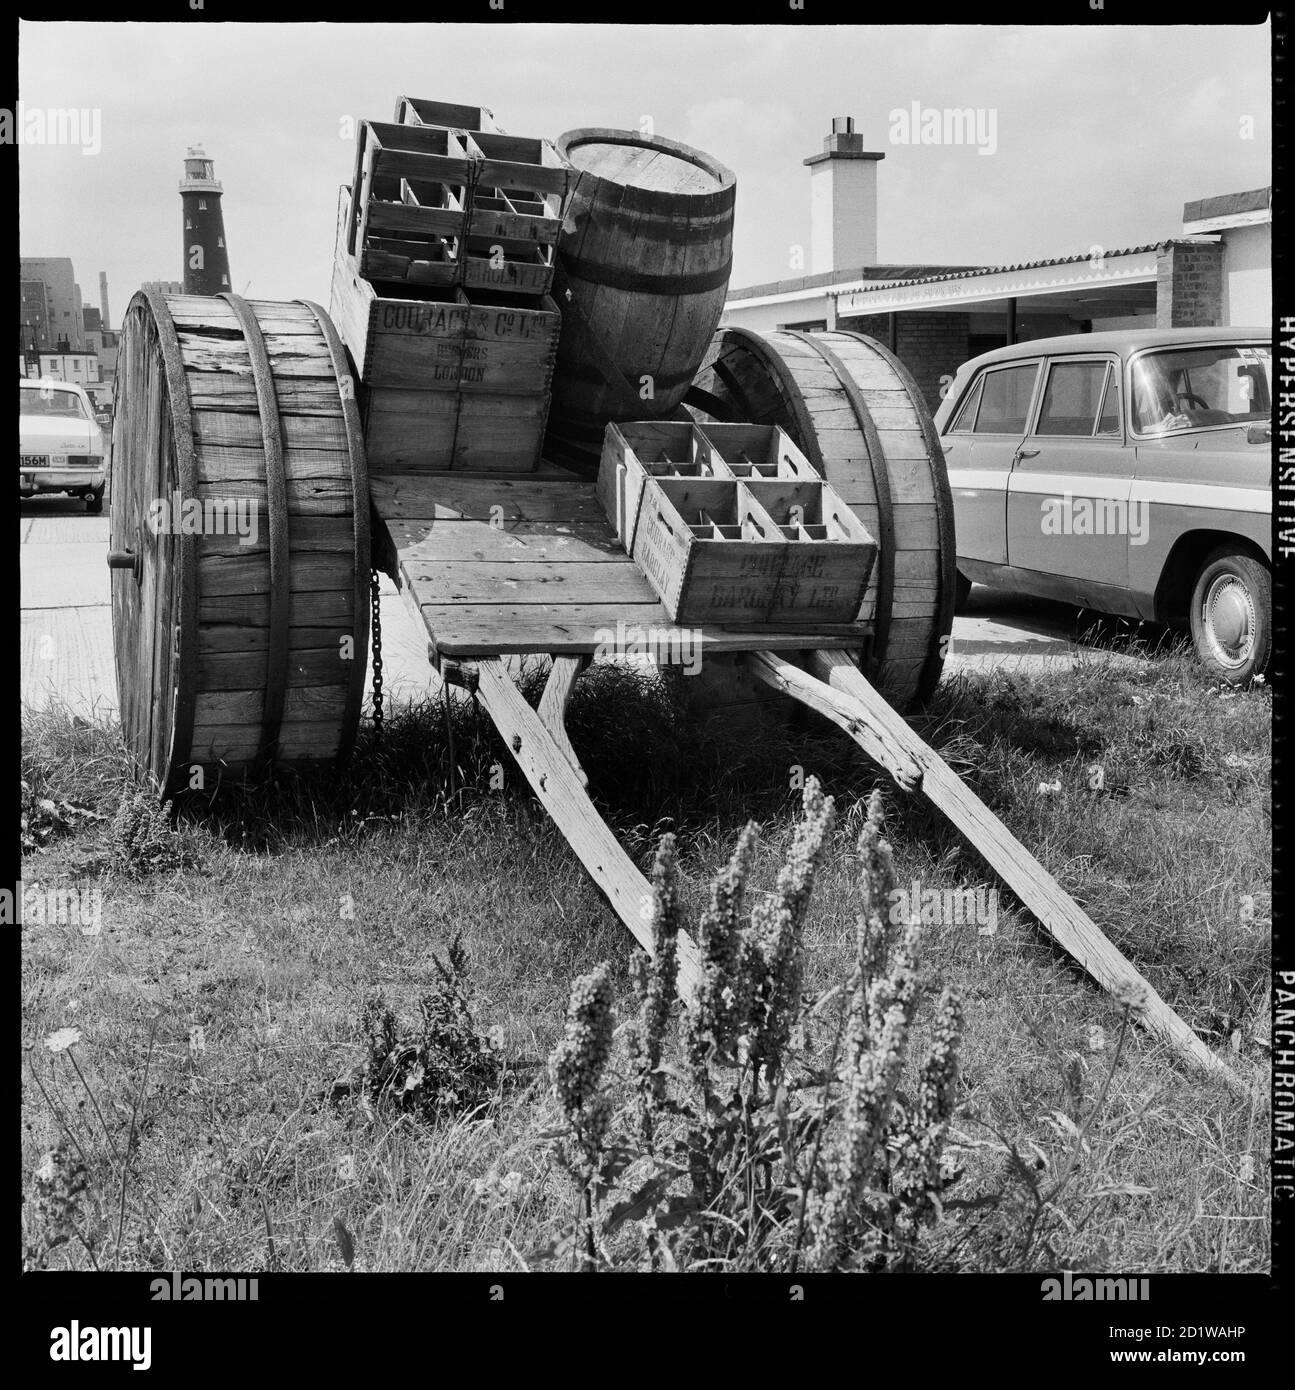 Dungeness, Lydd, Shepway, Kent. Un carro tirado por caballos cargado con cajas de cerveza y un barril en exhibición en el aparcamiento al lado de Dungeness Old Lighthouse el carro fue utilizado para entregar cerveza en las casas públicas de Dungeness antes de la construcción de una carretera al otro lado de la playa. Foto de stock